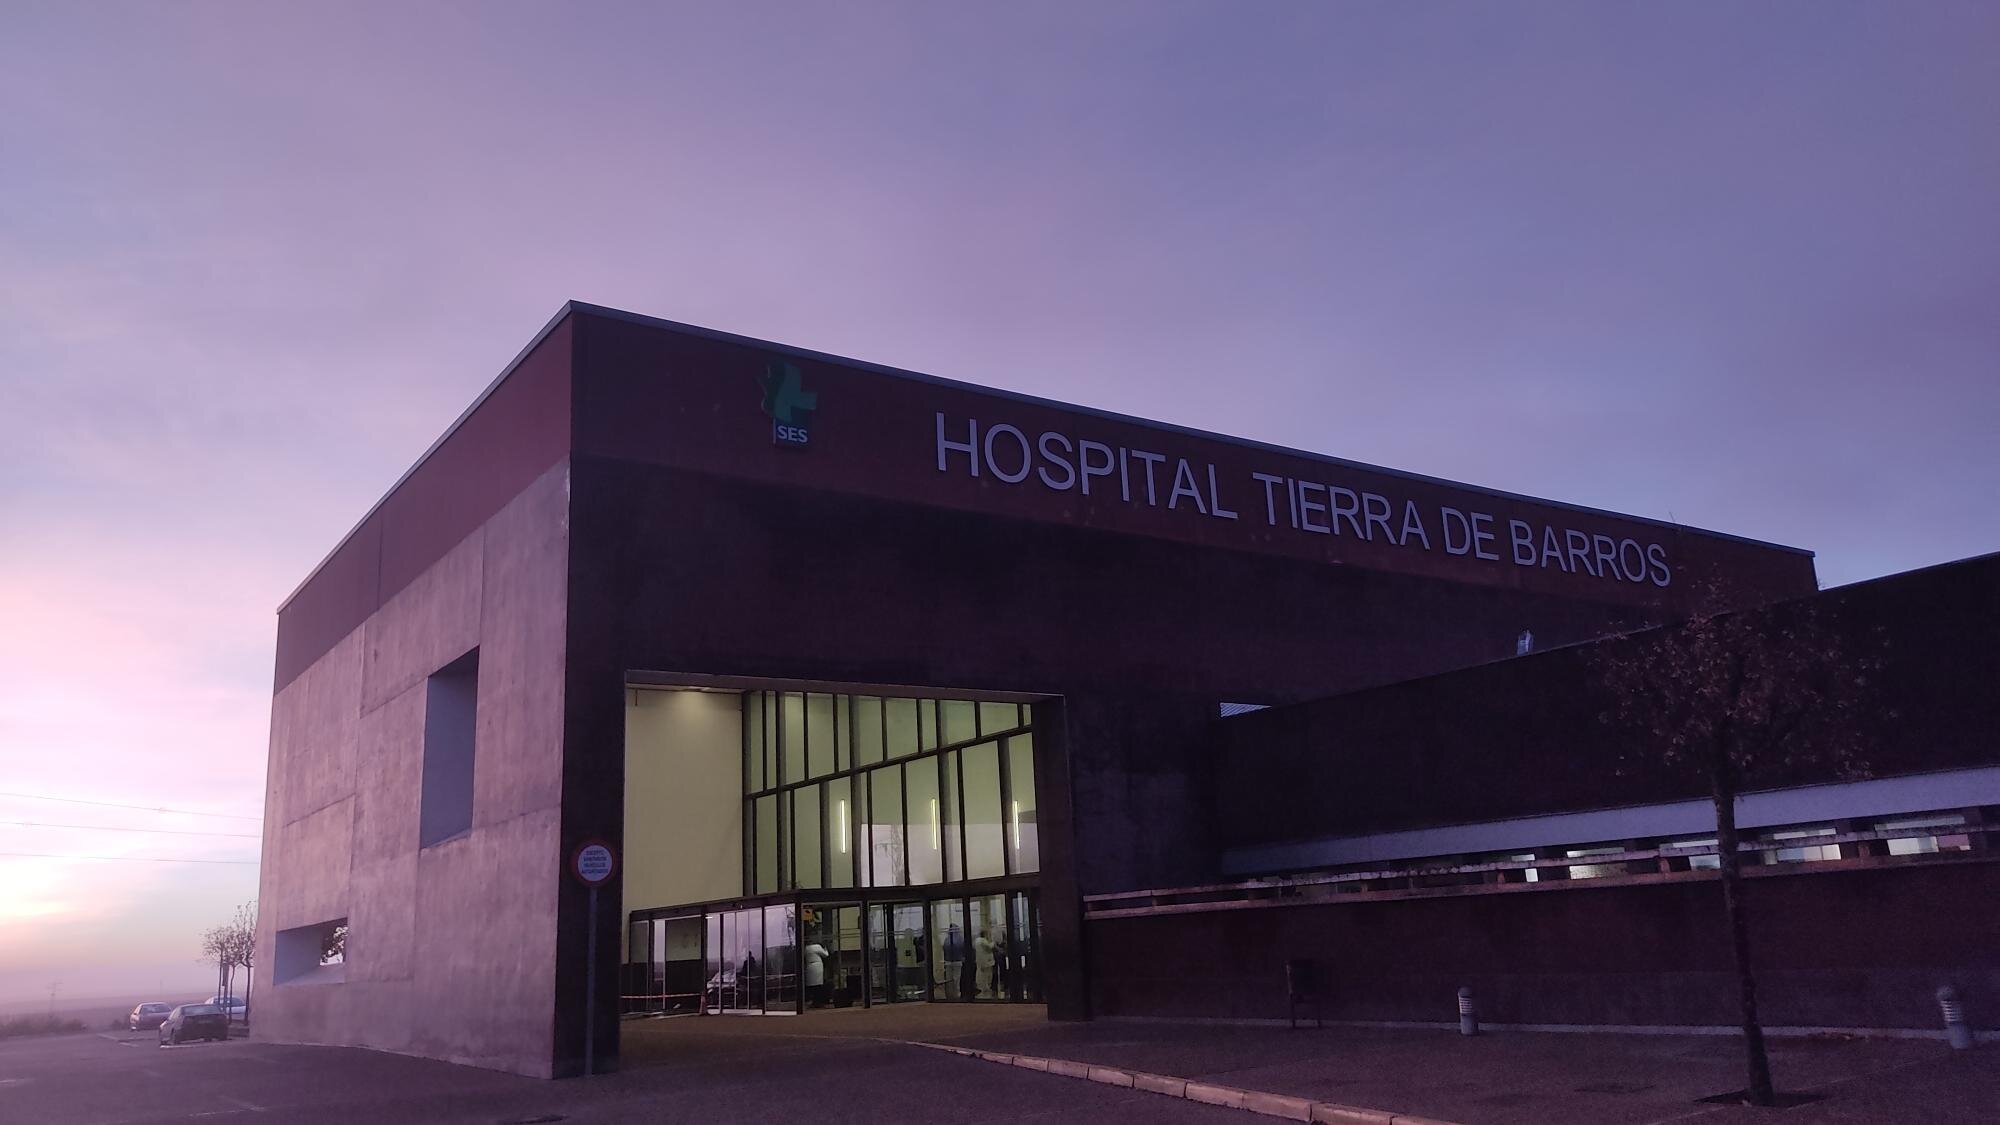 Entrada al Hospital Tierra de Barros